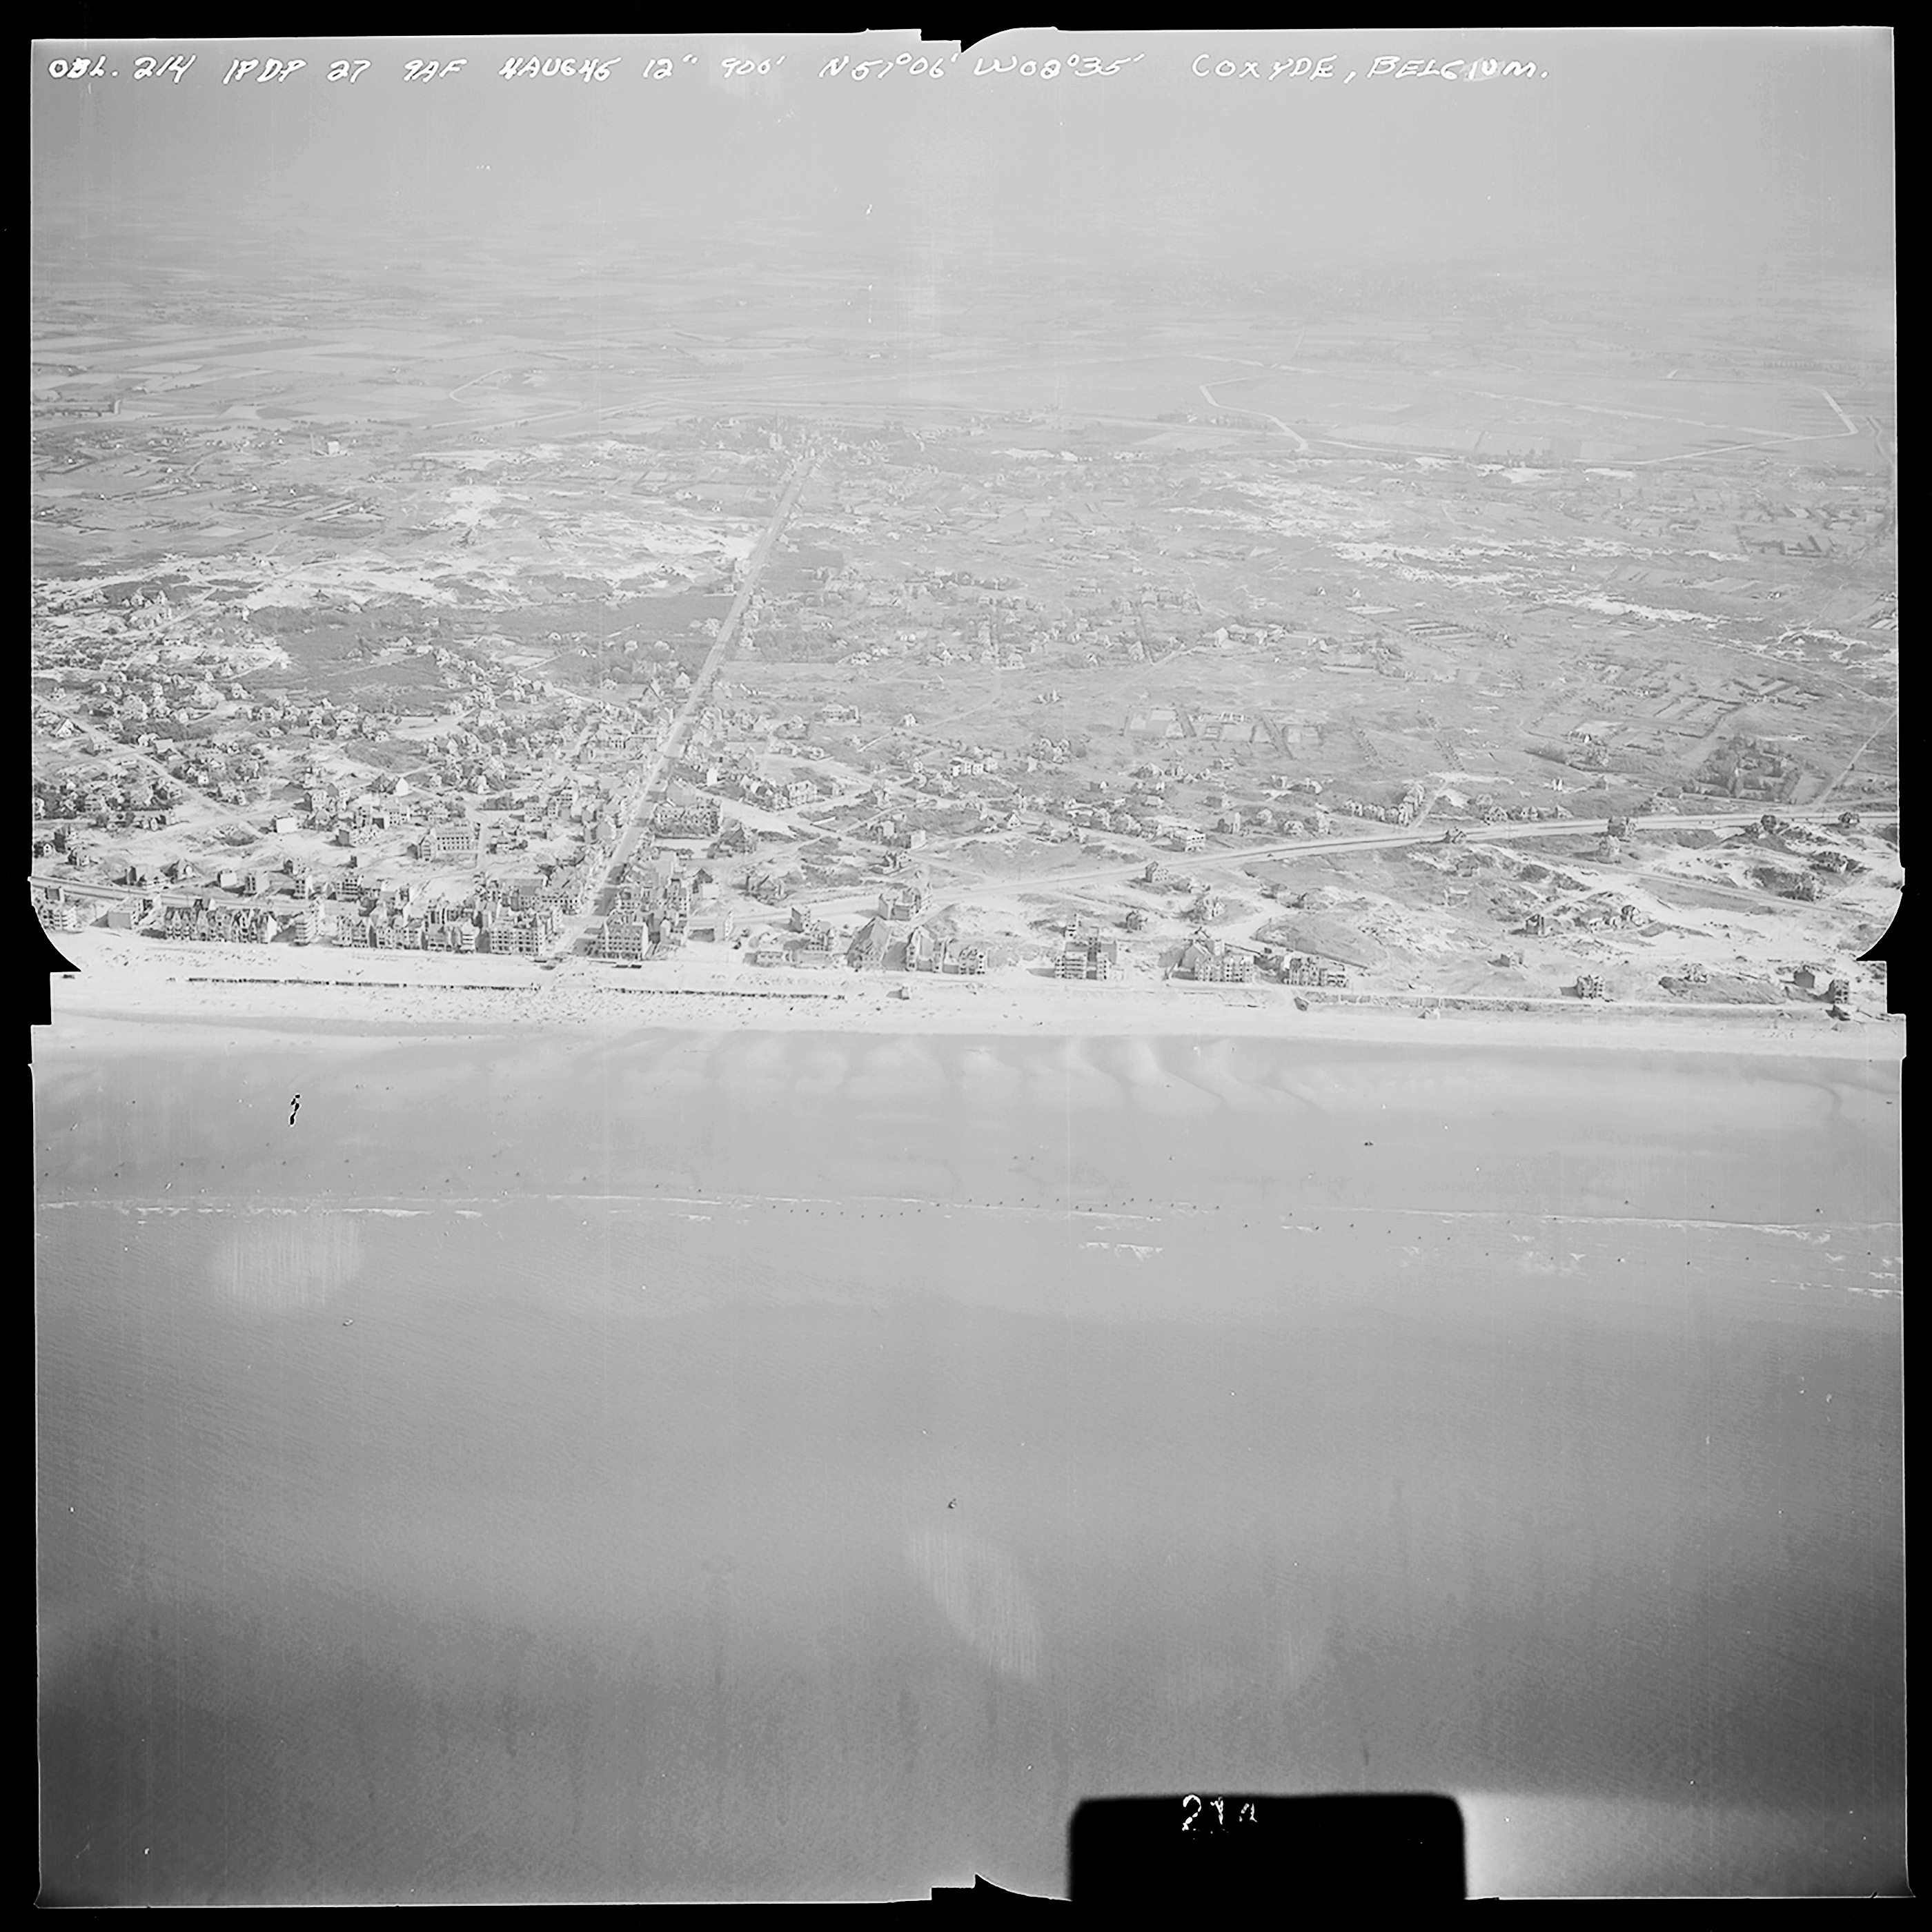 Atlantikwall Tweede Wereldoorlog in Nederland en België en Frankrijk - Luchtfoto's en historische luchtopnames - 1945 oorlog foto's en beelden